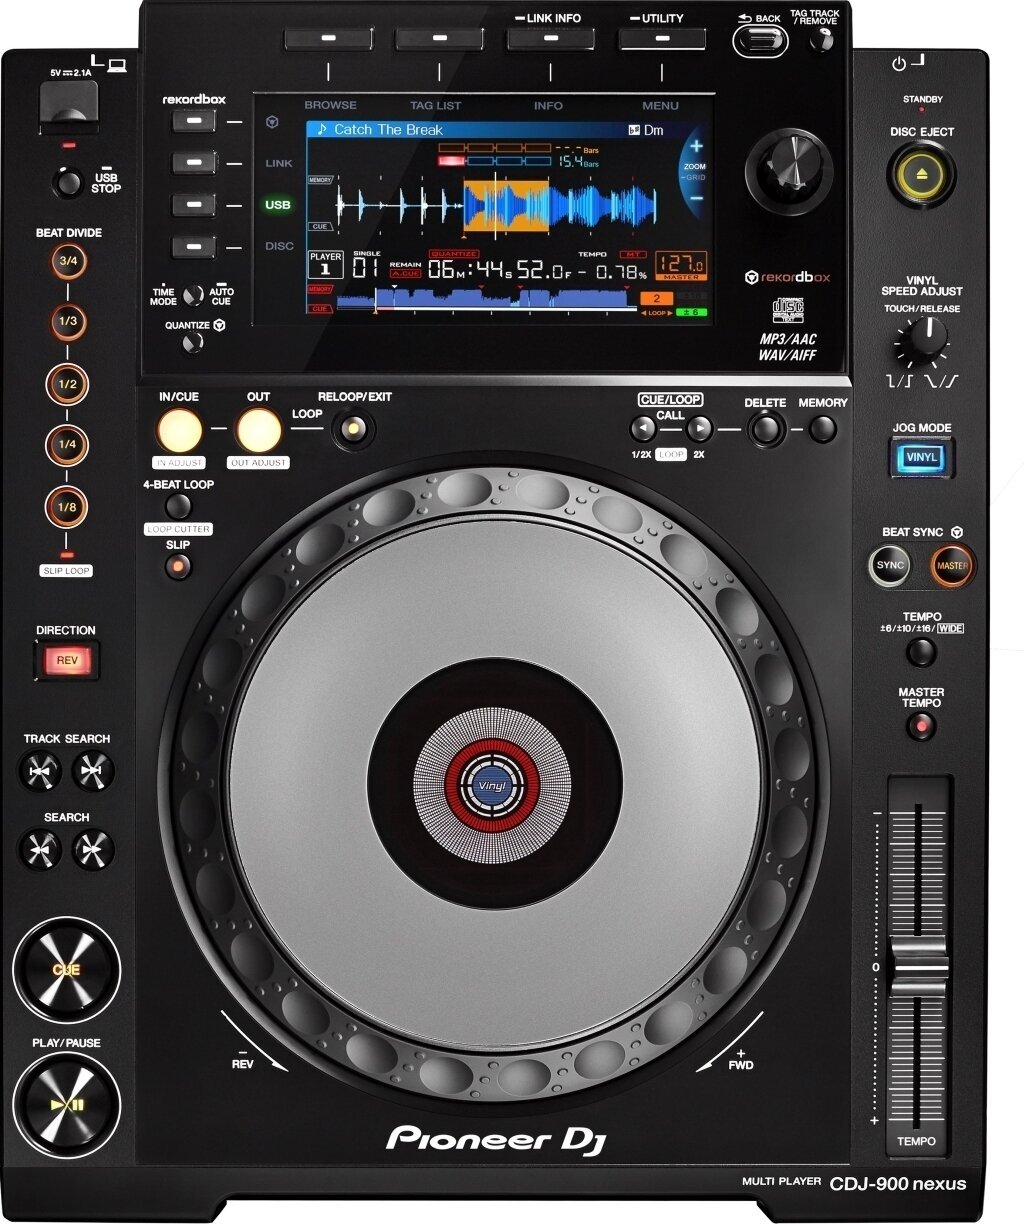 Desk DJ Player Pioneer Dj CDJ-900NXS